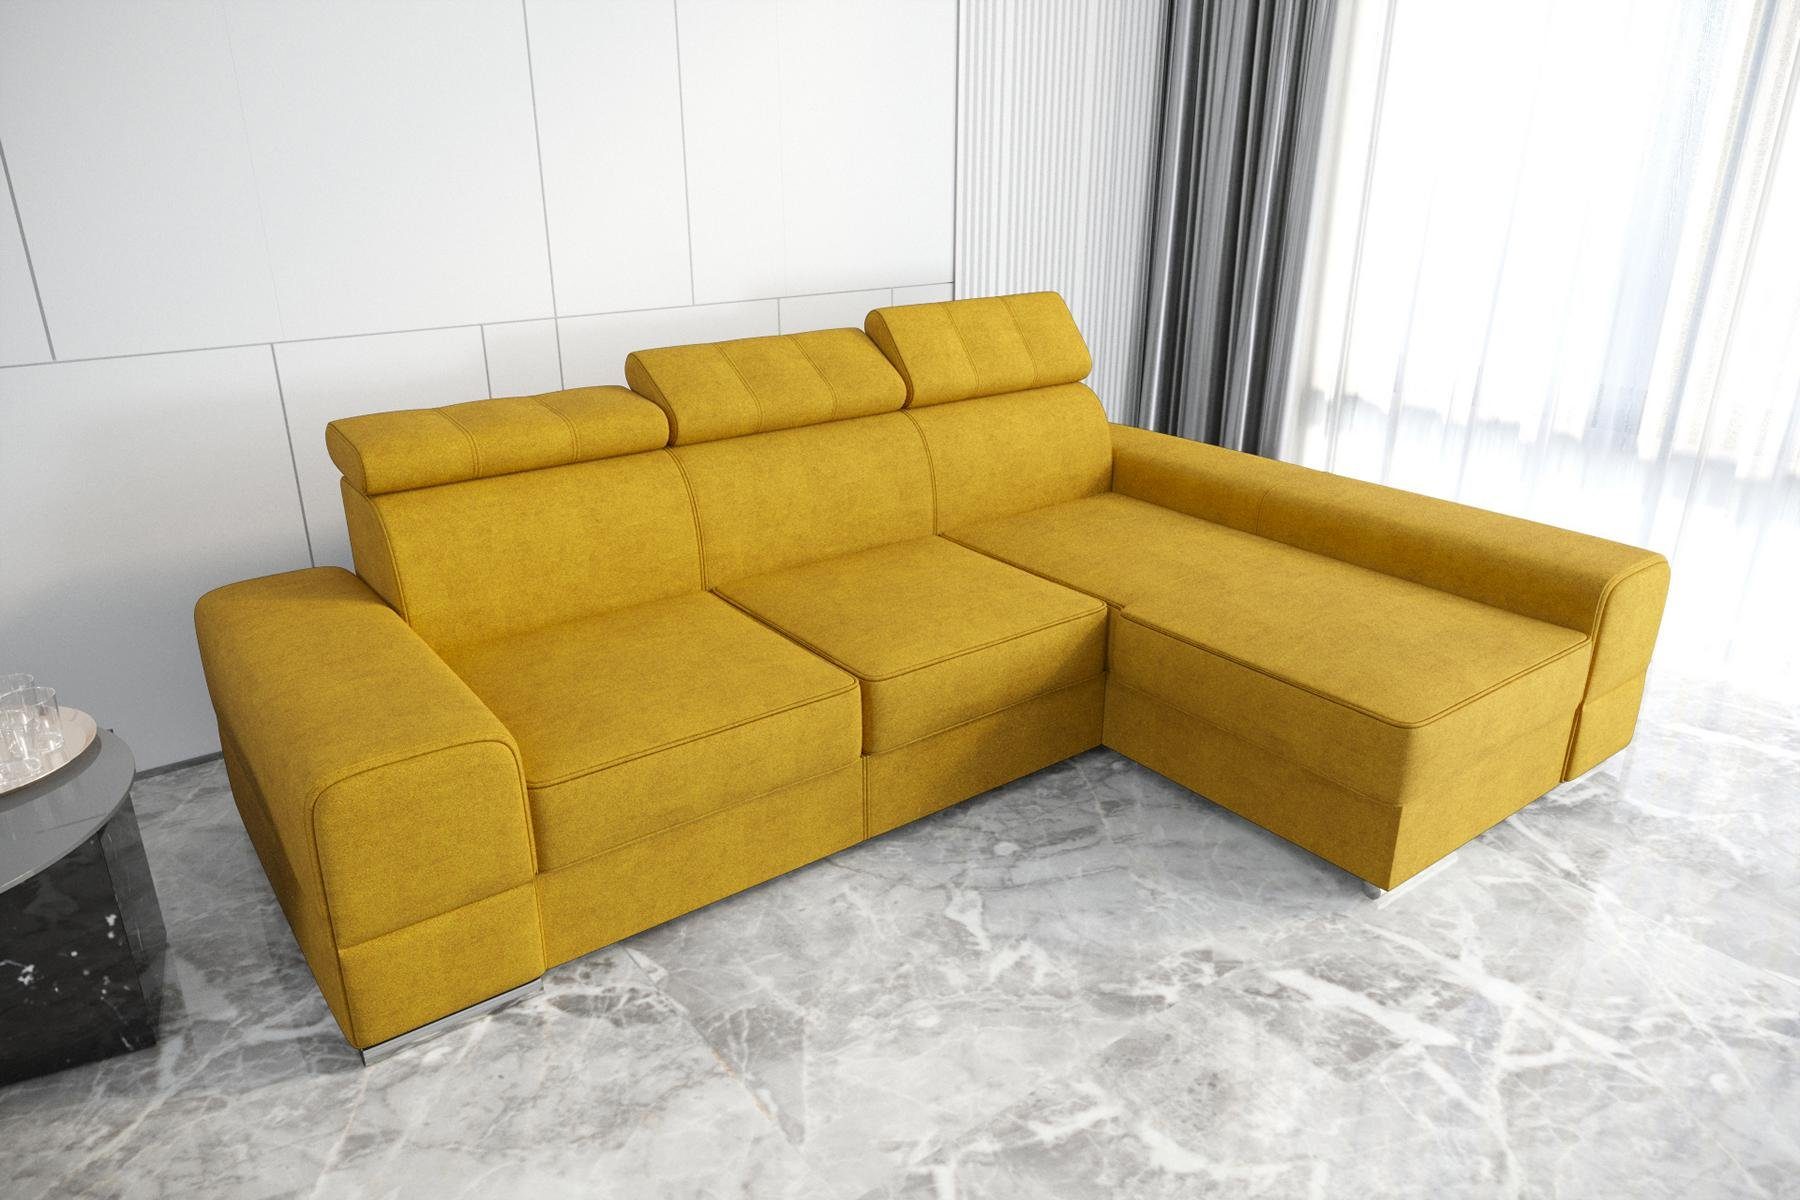 JVmoebel Ecksofa Designer Beiges Neu, Made Europe Möbel Couch Gelb in Luxus Ecksofa L-Form Wohnzimmer